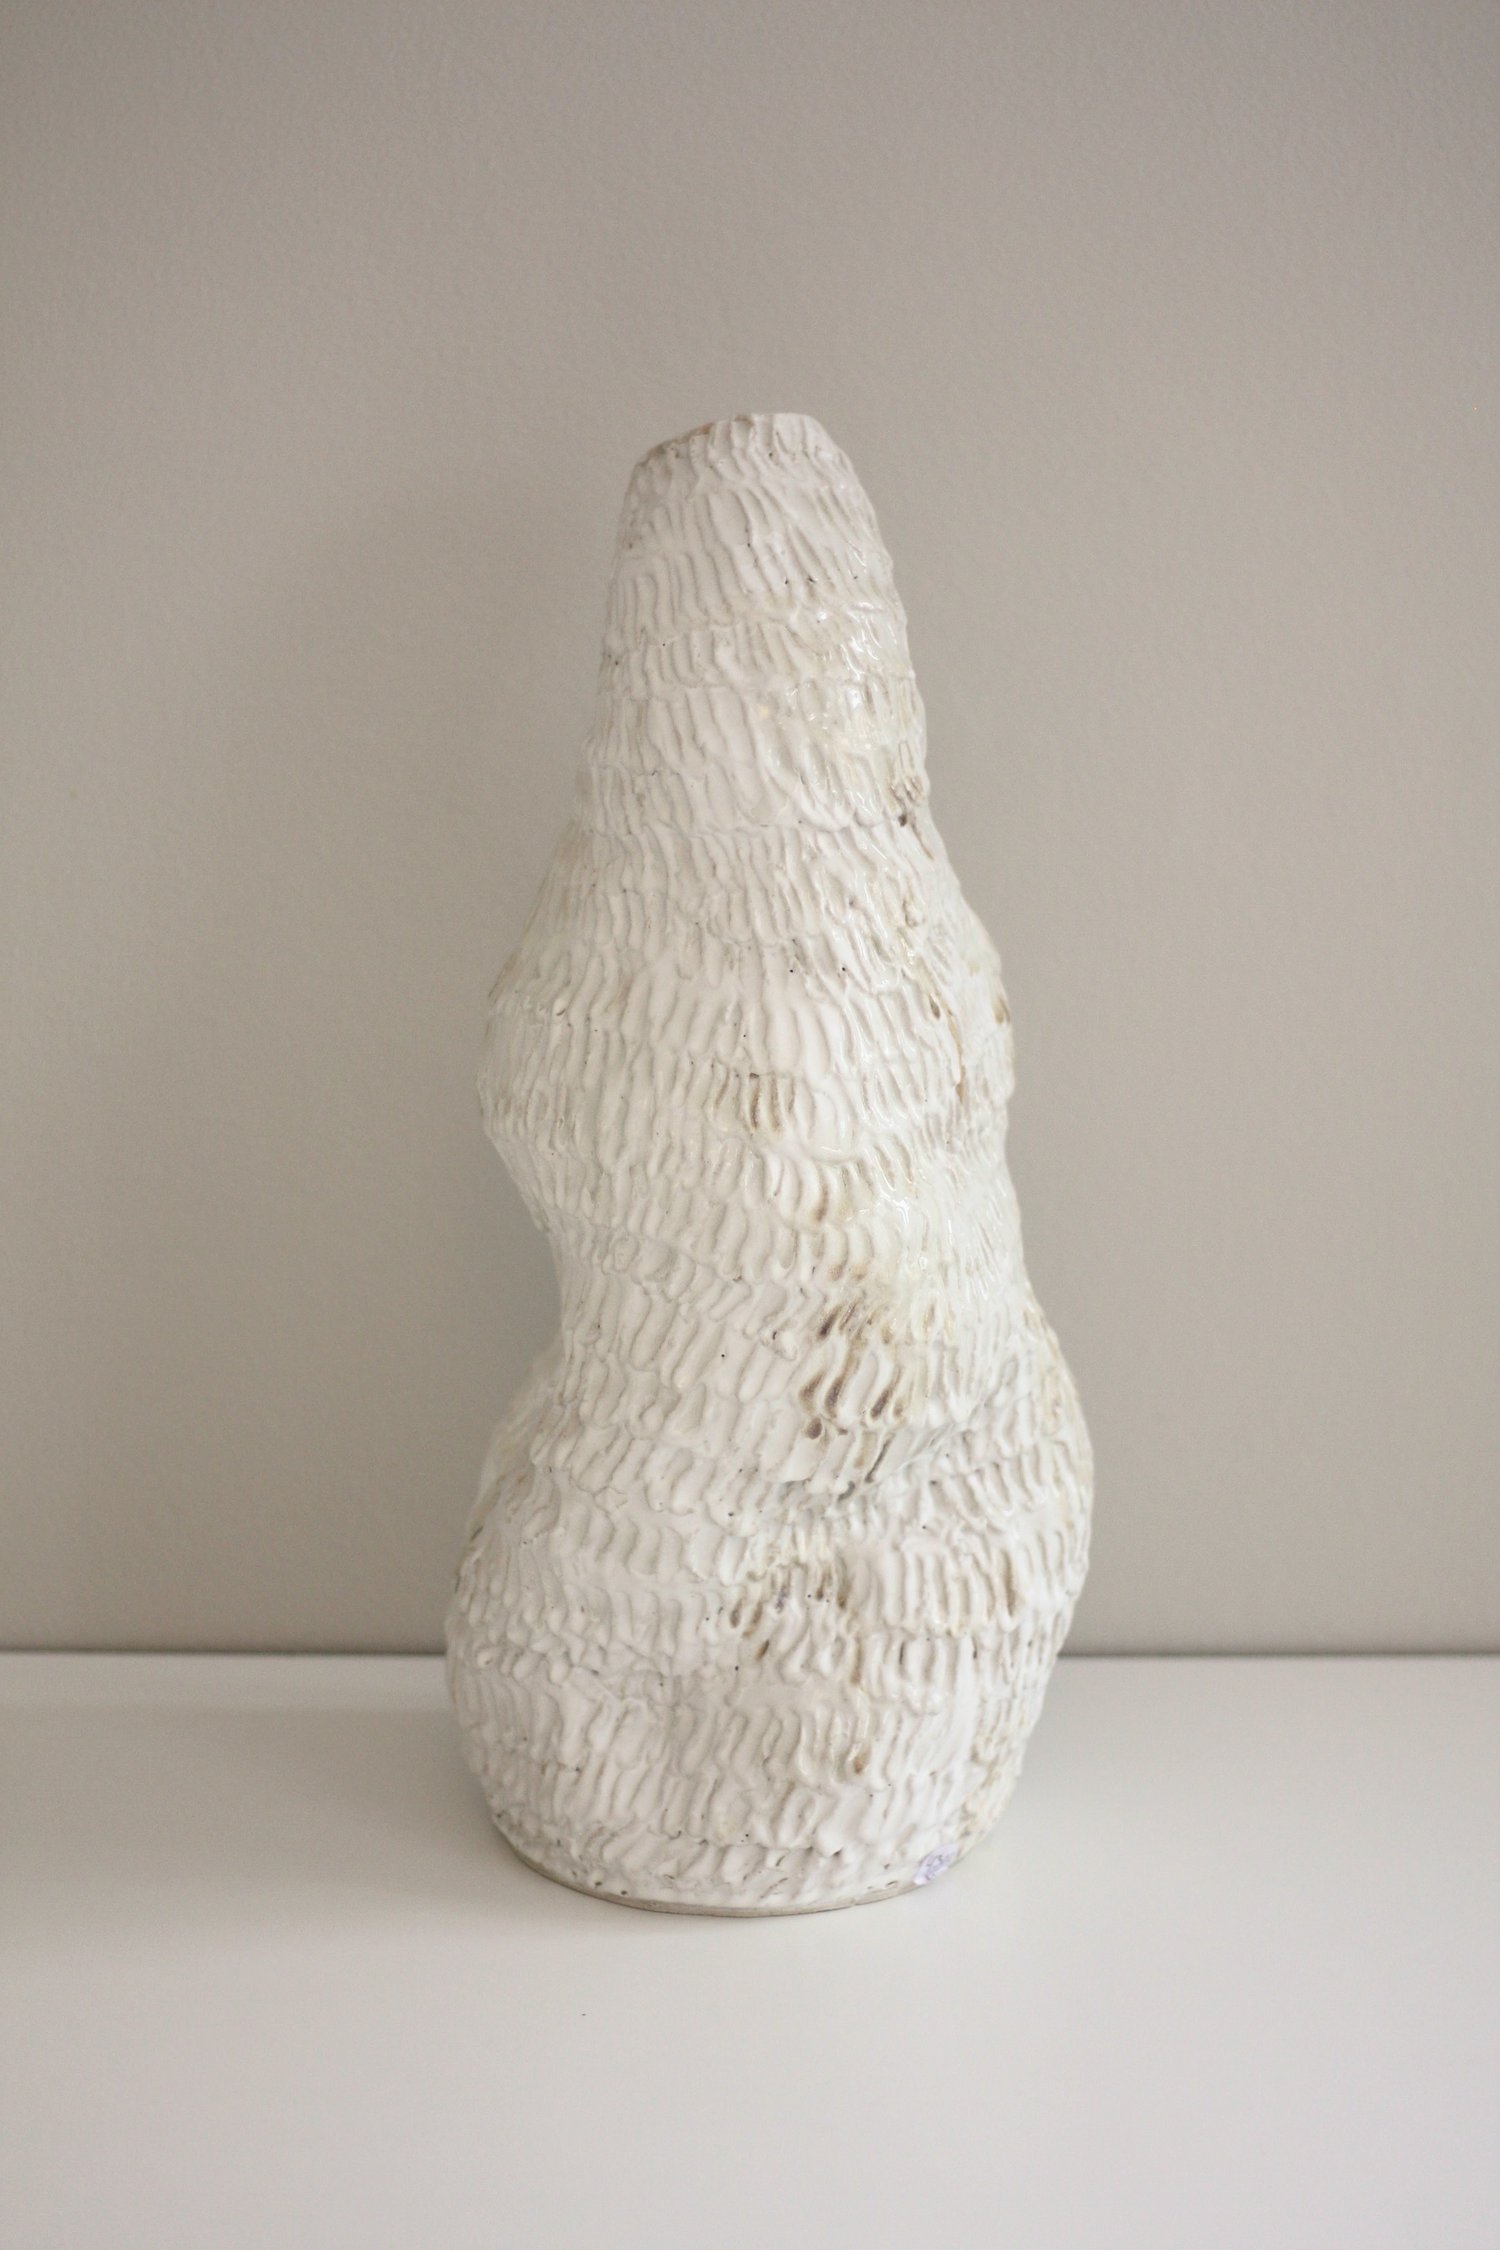 Image of Vase No. 02 